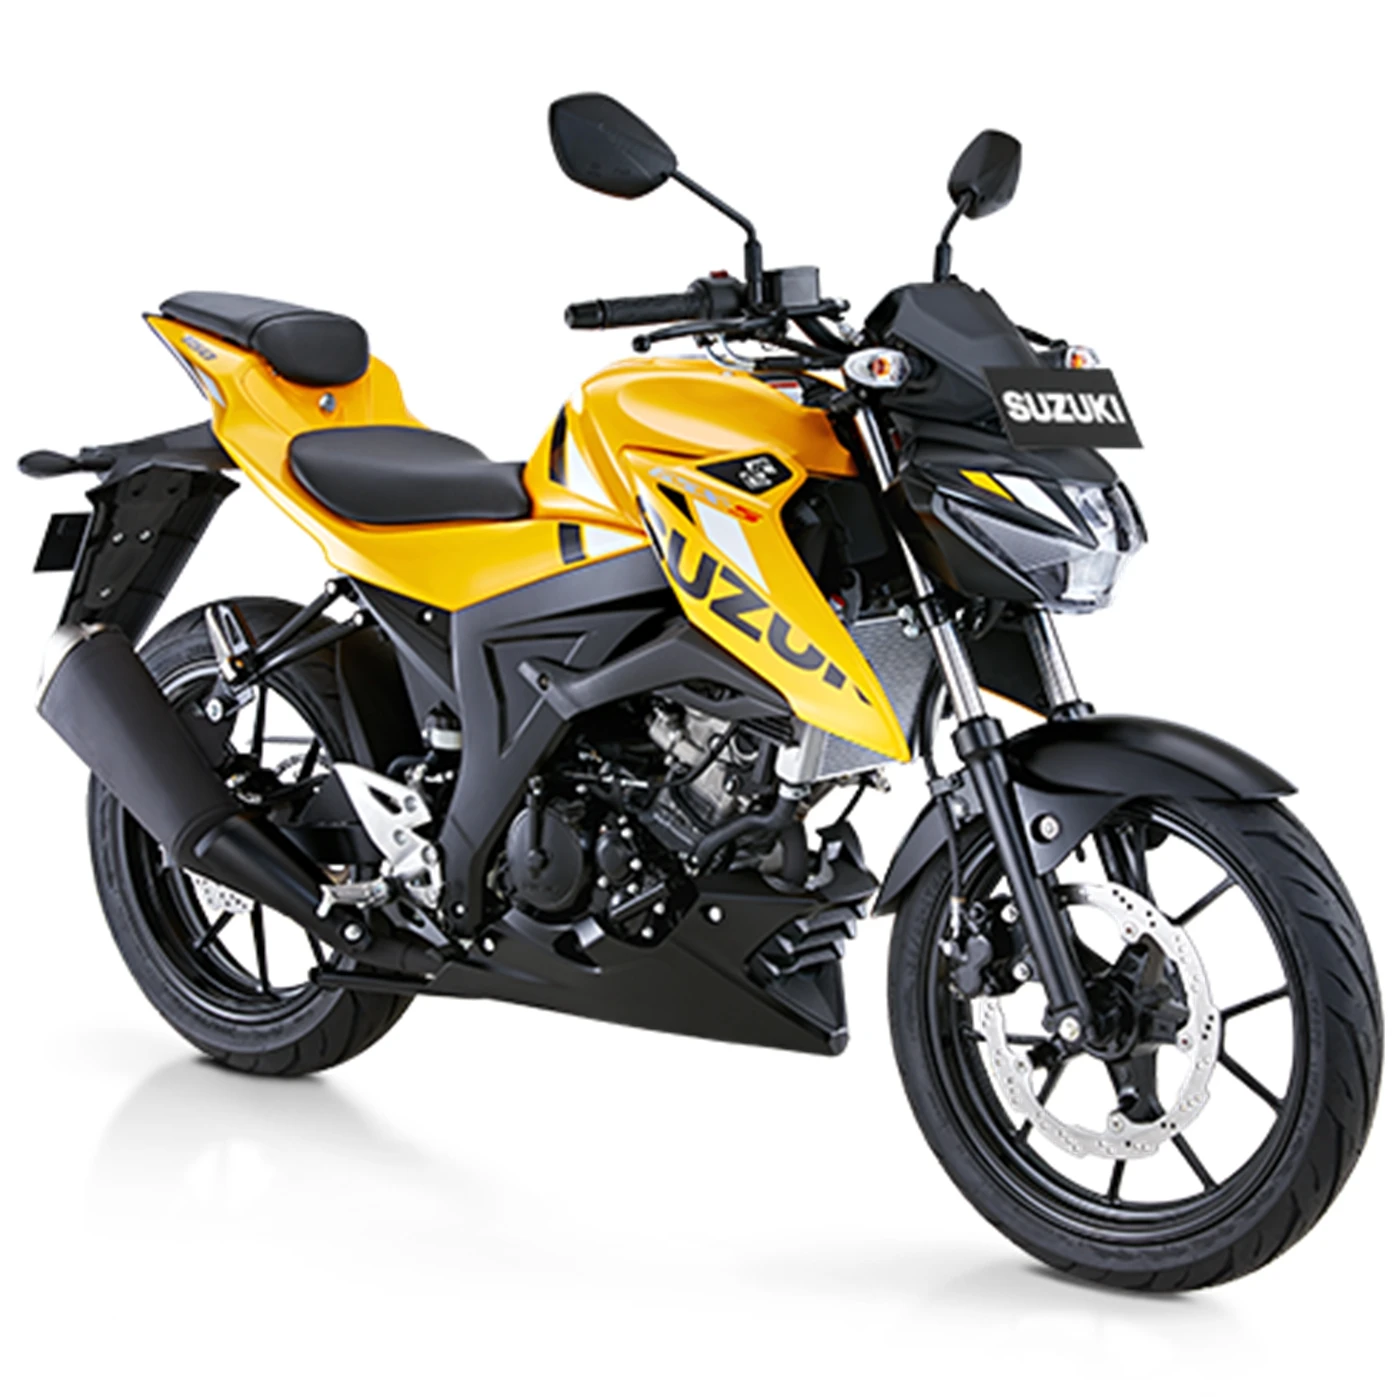 Brand New Indonesia Suzuki Gsx-s 150 Street Motorcycles - Buy Suzuki ...